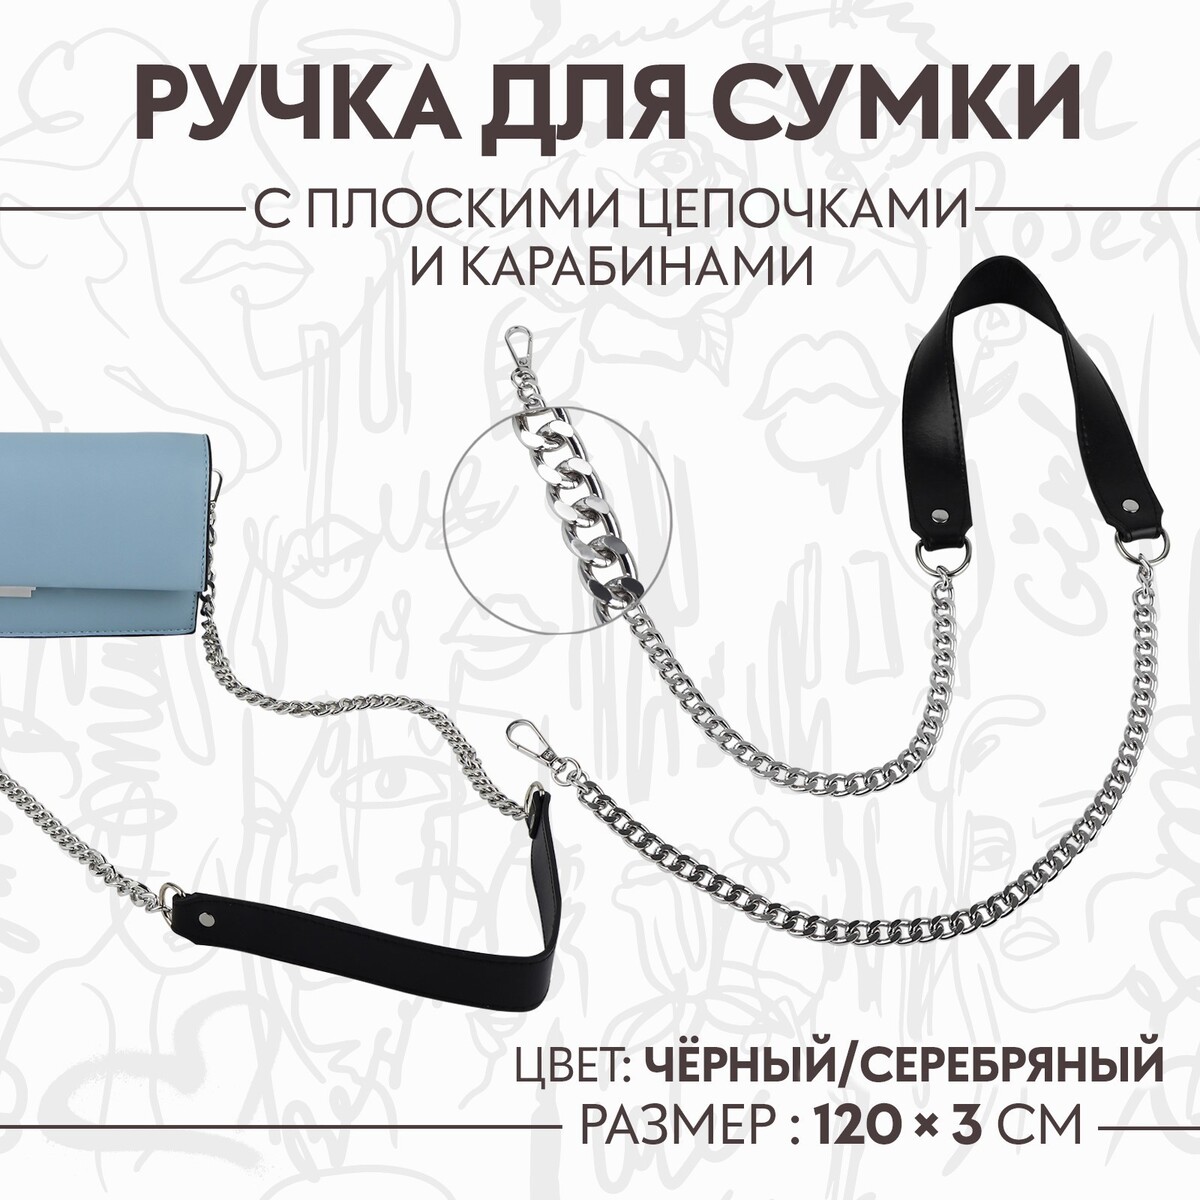 Ручка для сумки, с плоскими цепочками и карабинами, 120 × 3 см, цвет черный/серебряный ручка для сумки с карабинами 35 ± 1 см × 3 5 см серебряный